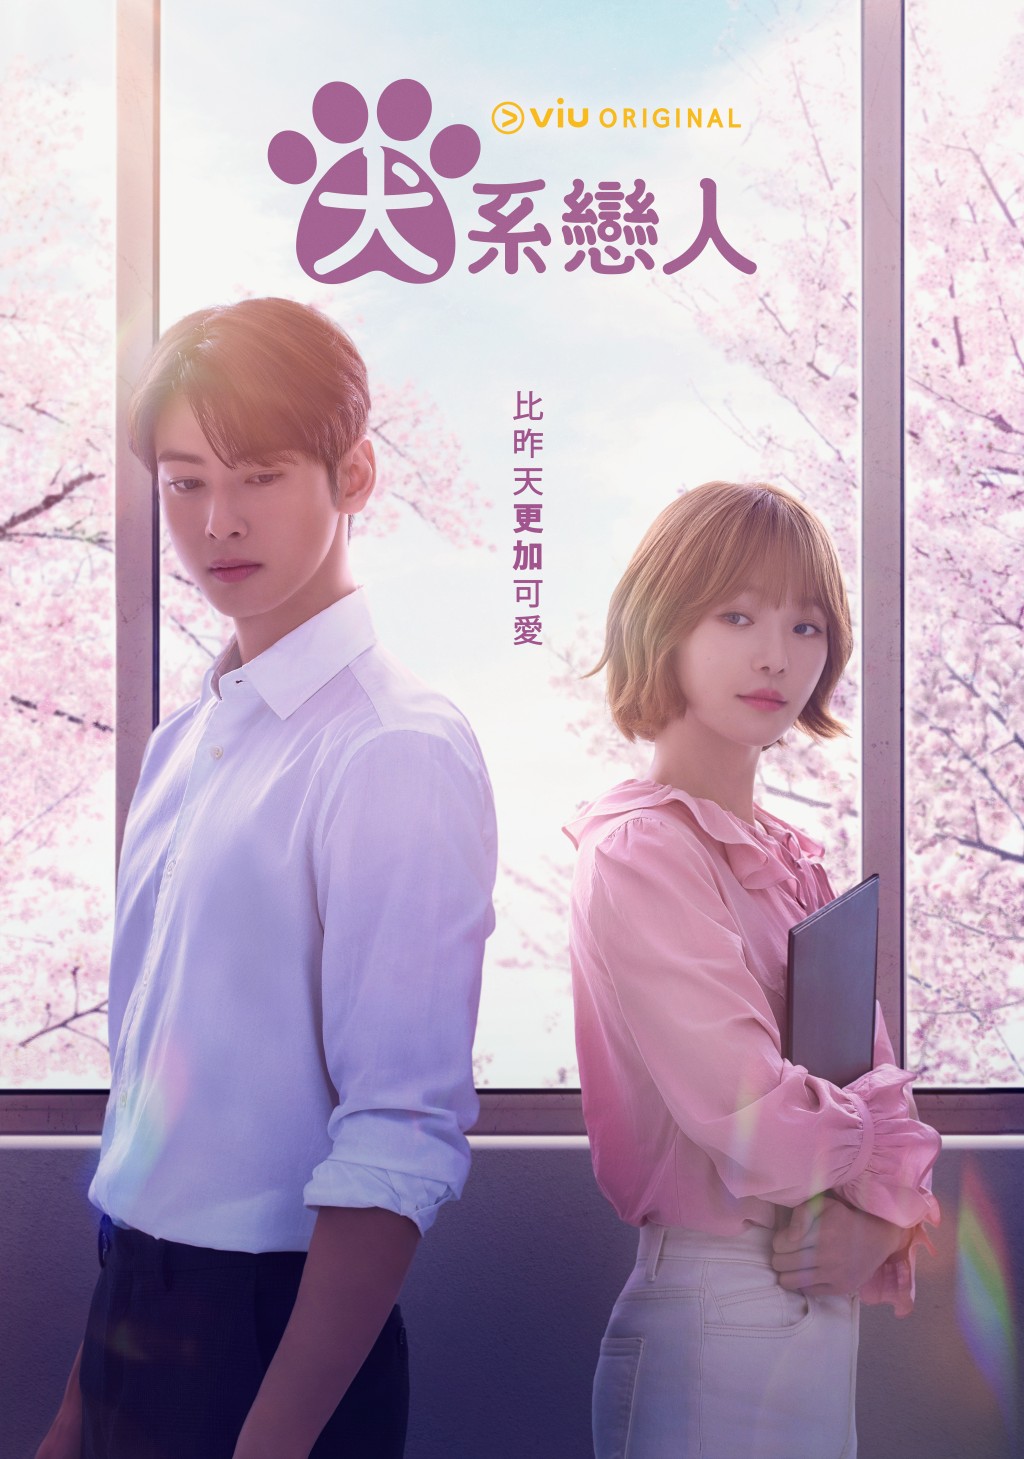 車銀優、朴圭瑛主演的韓劇《犬系戀人》將在下月11日全球首播。